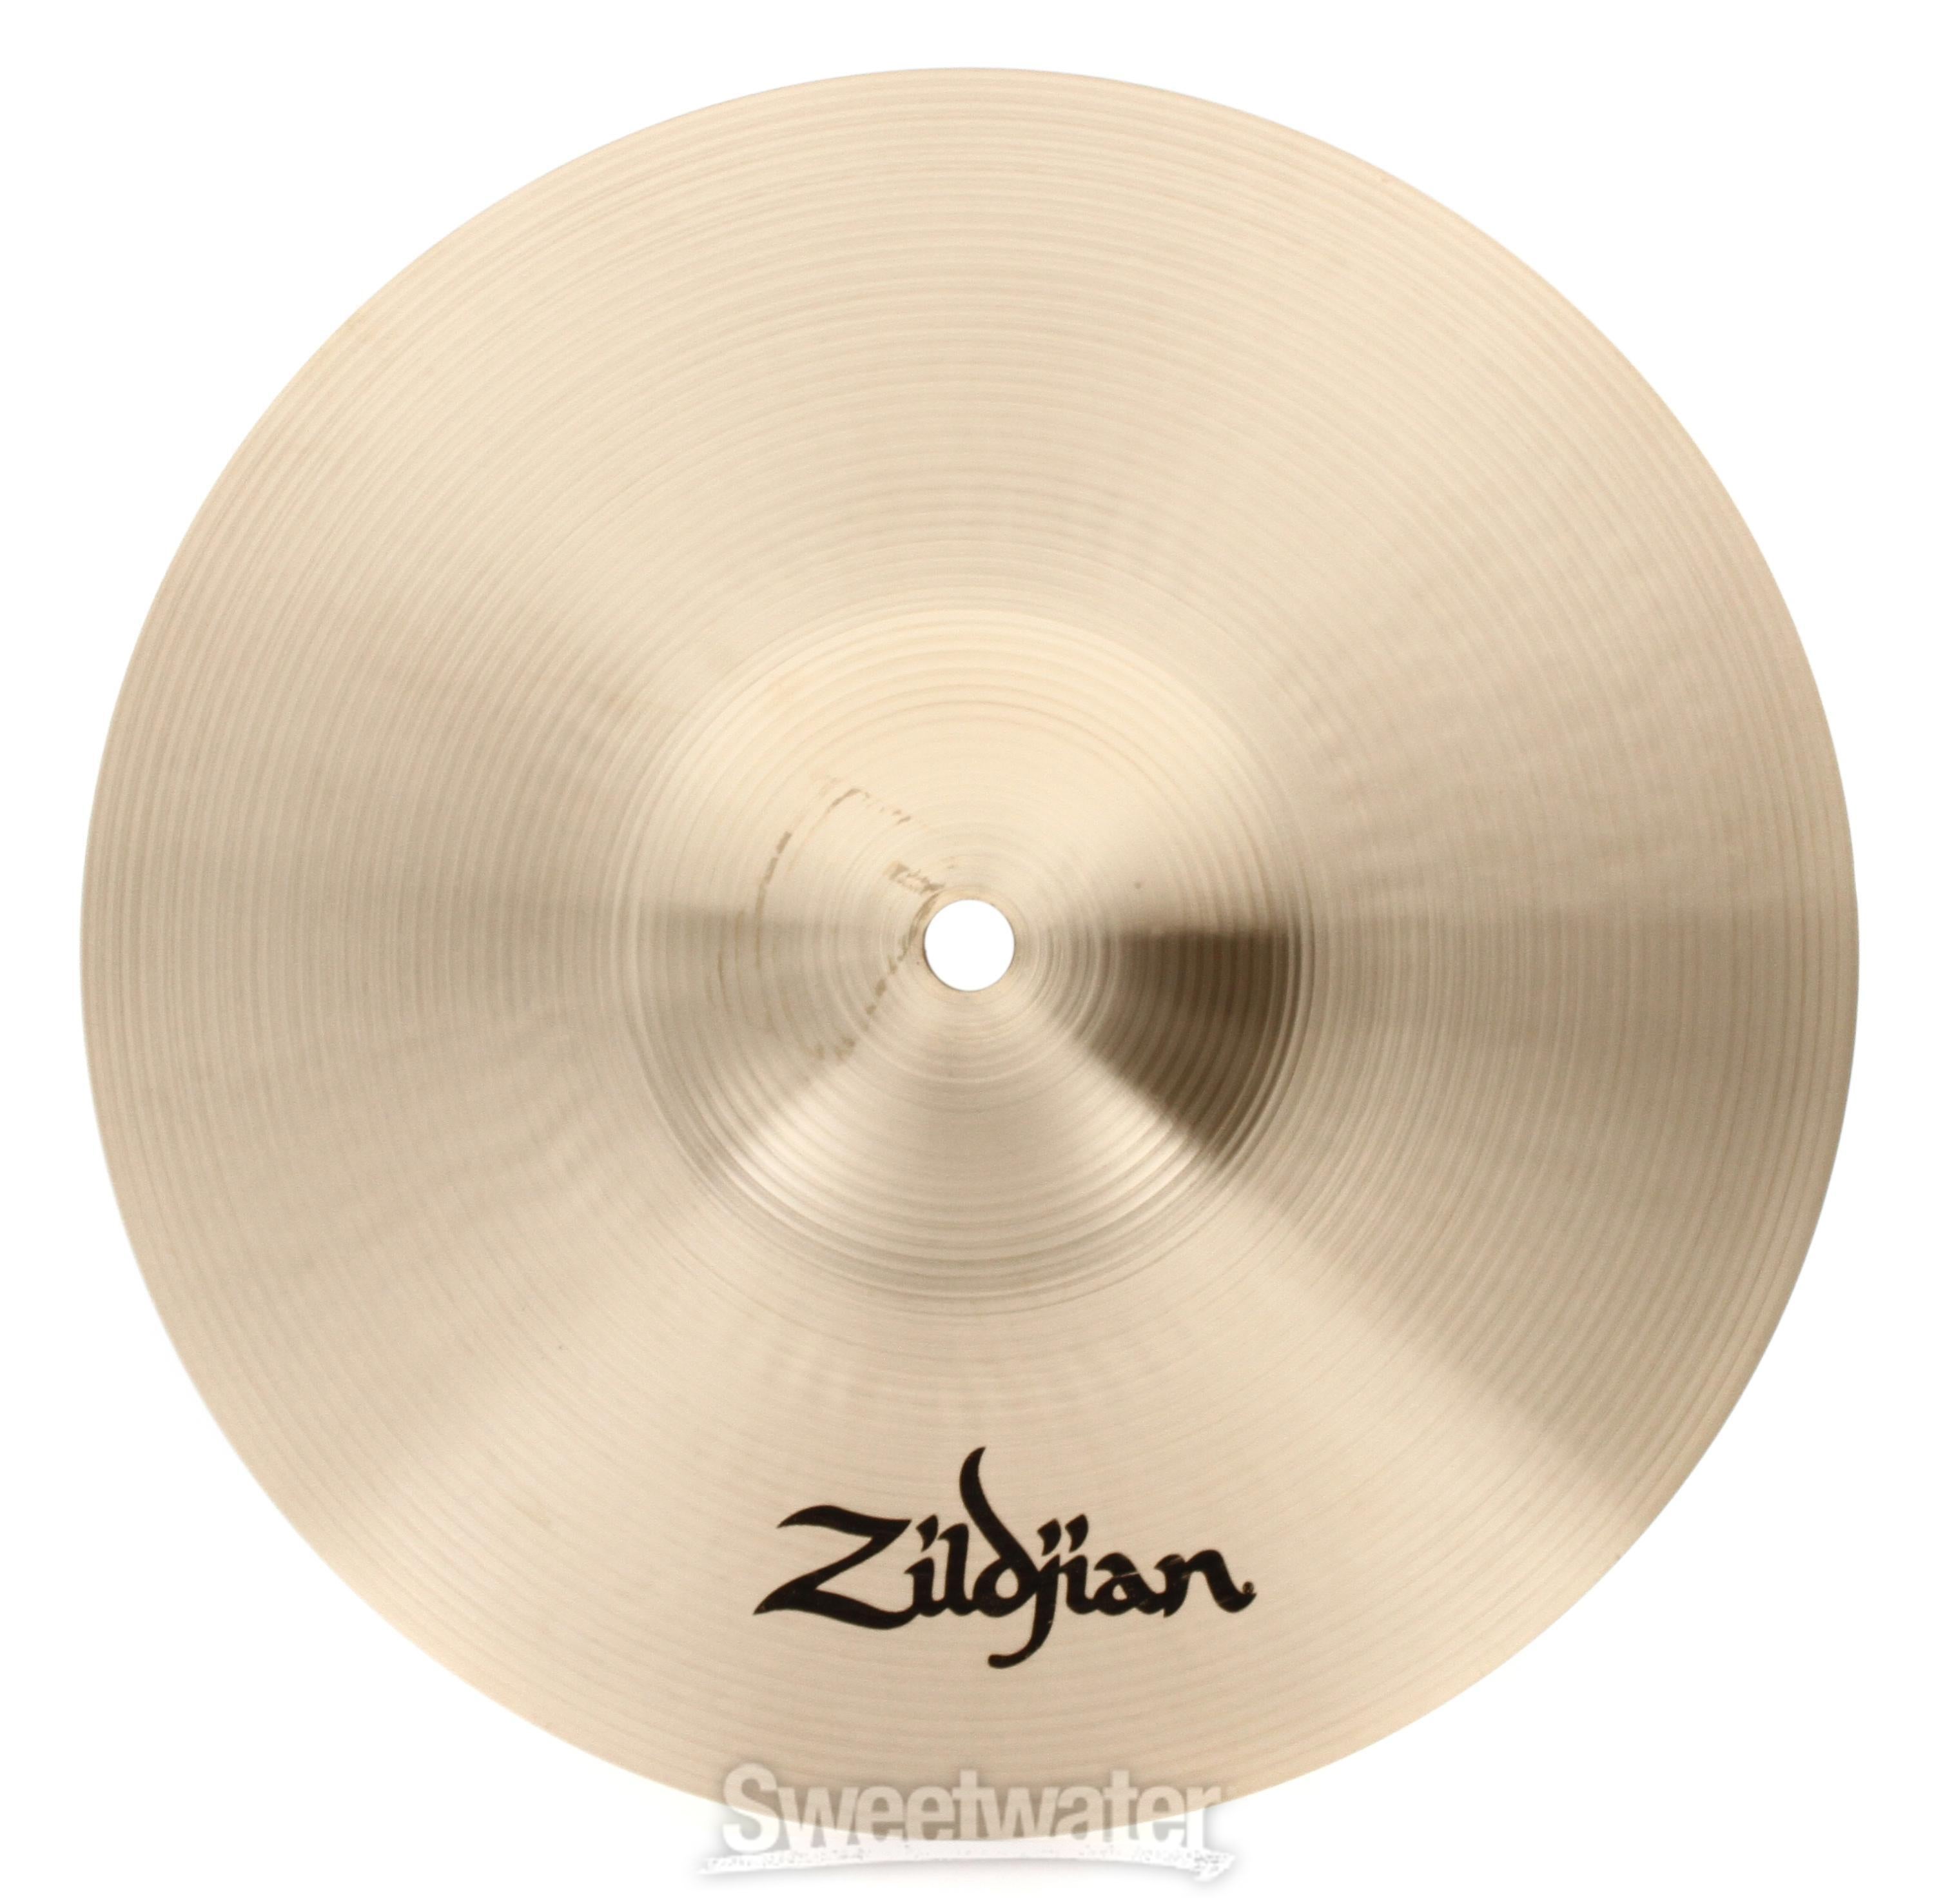 Zildjian 10 inch A Zildjian Splash Cymbal